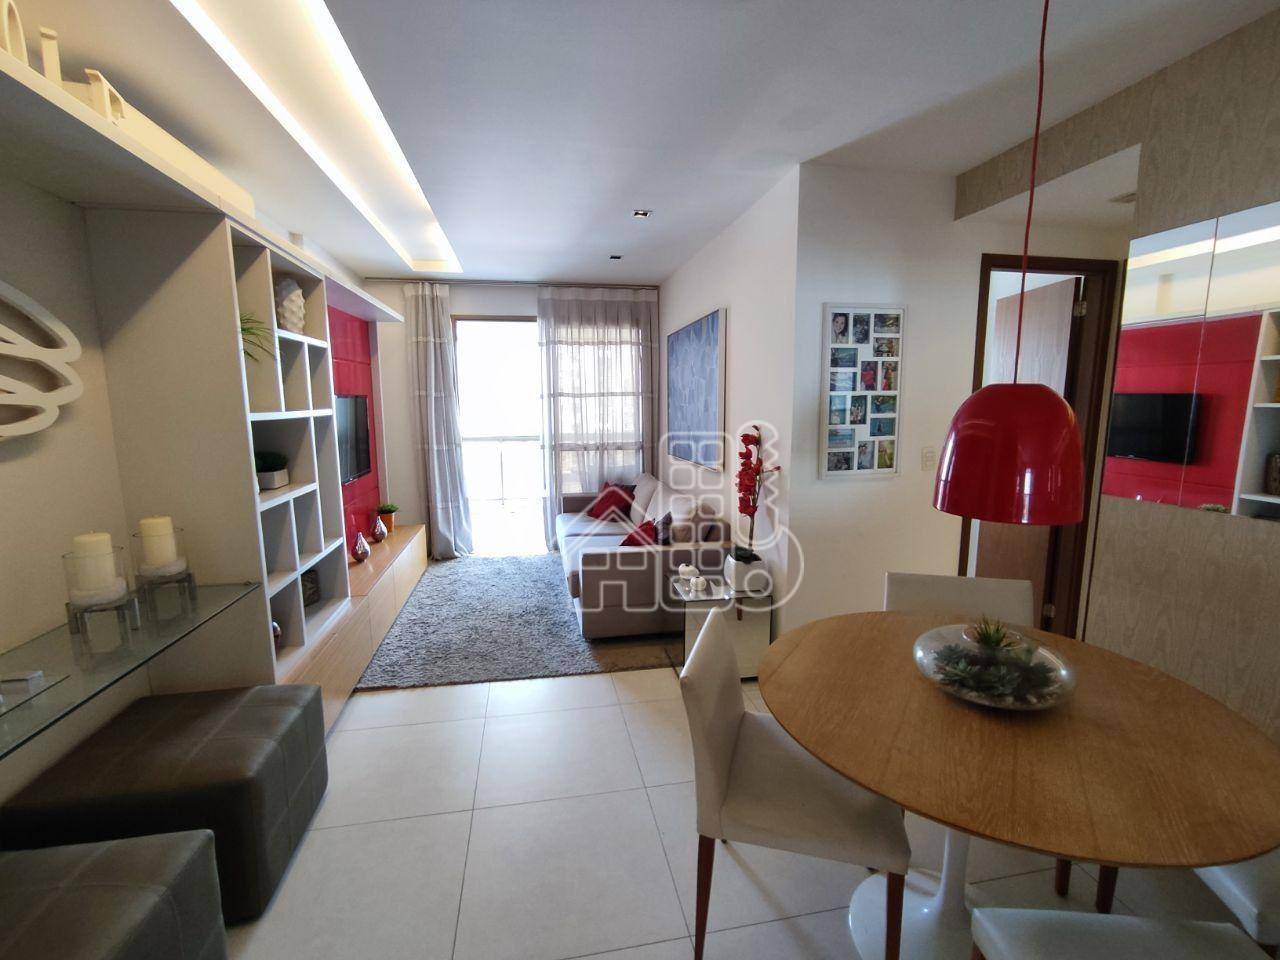 Apartamento com 2 dormitórios à venda, 80 m² por R$ 985.000,00 - Icaraí - Niterói/RJ